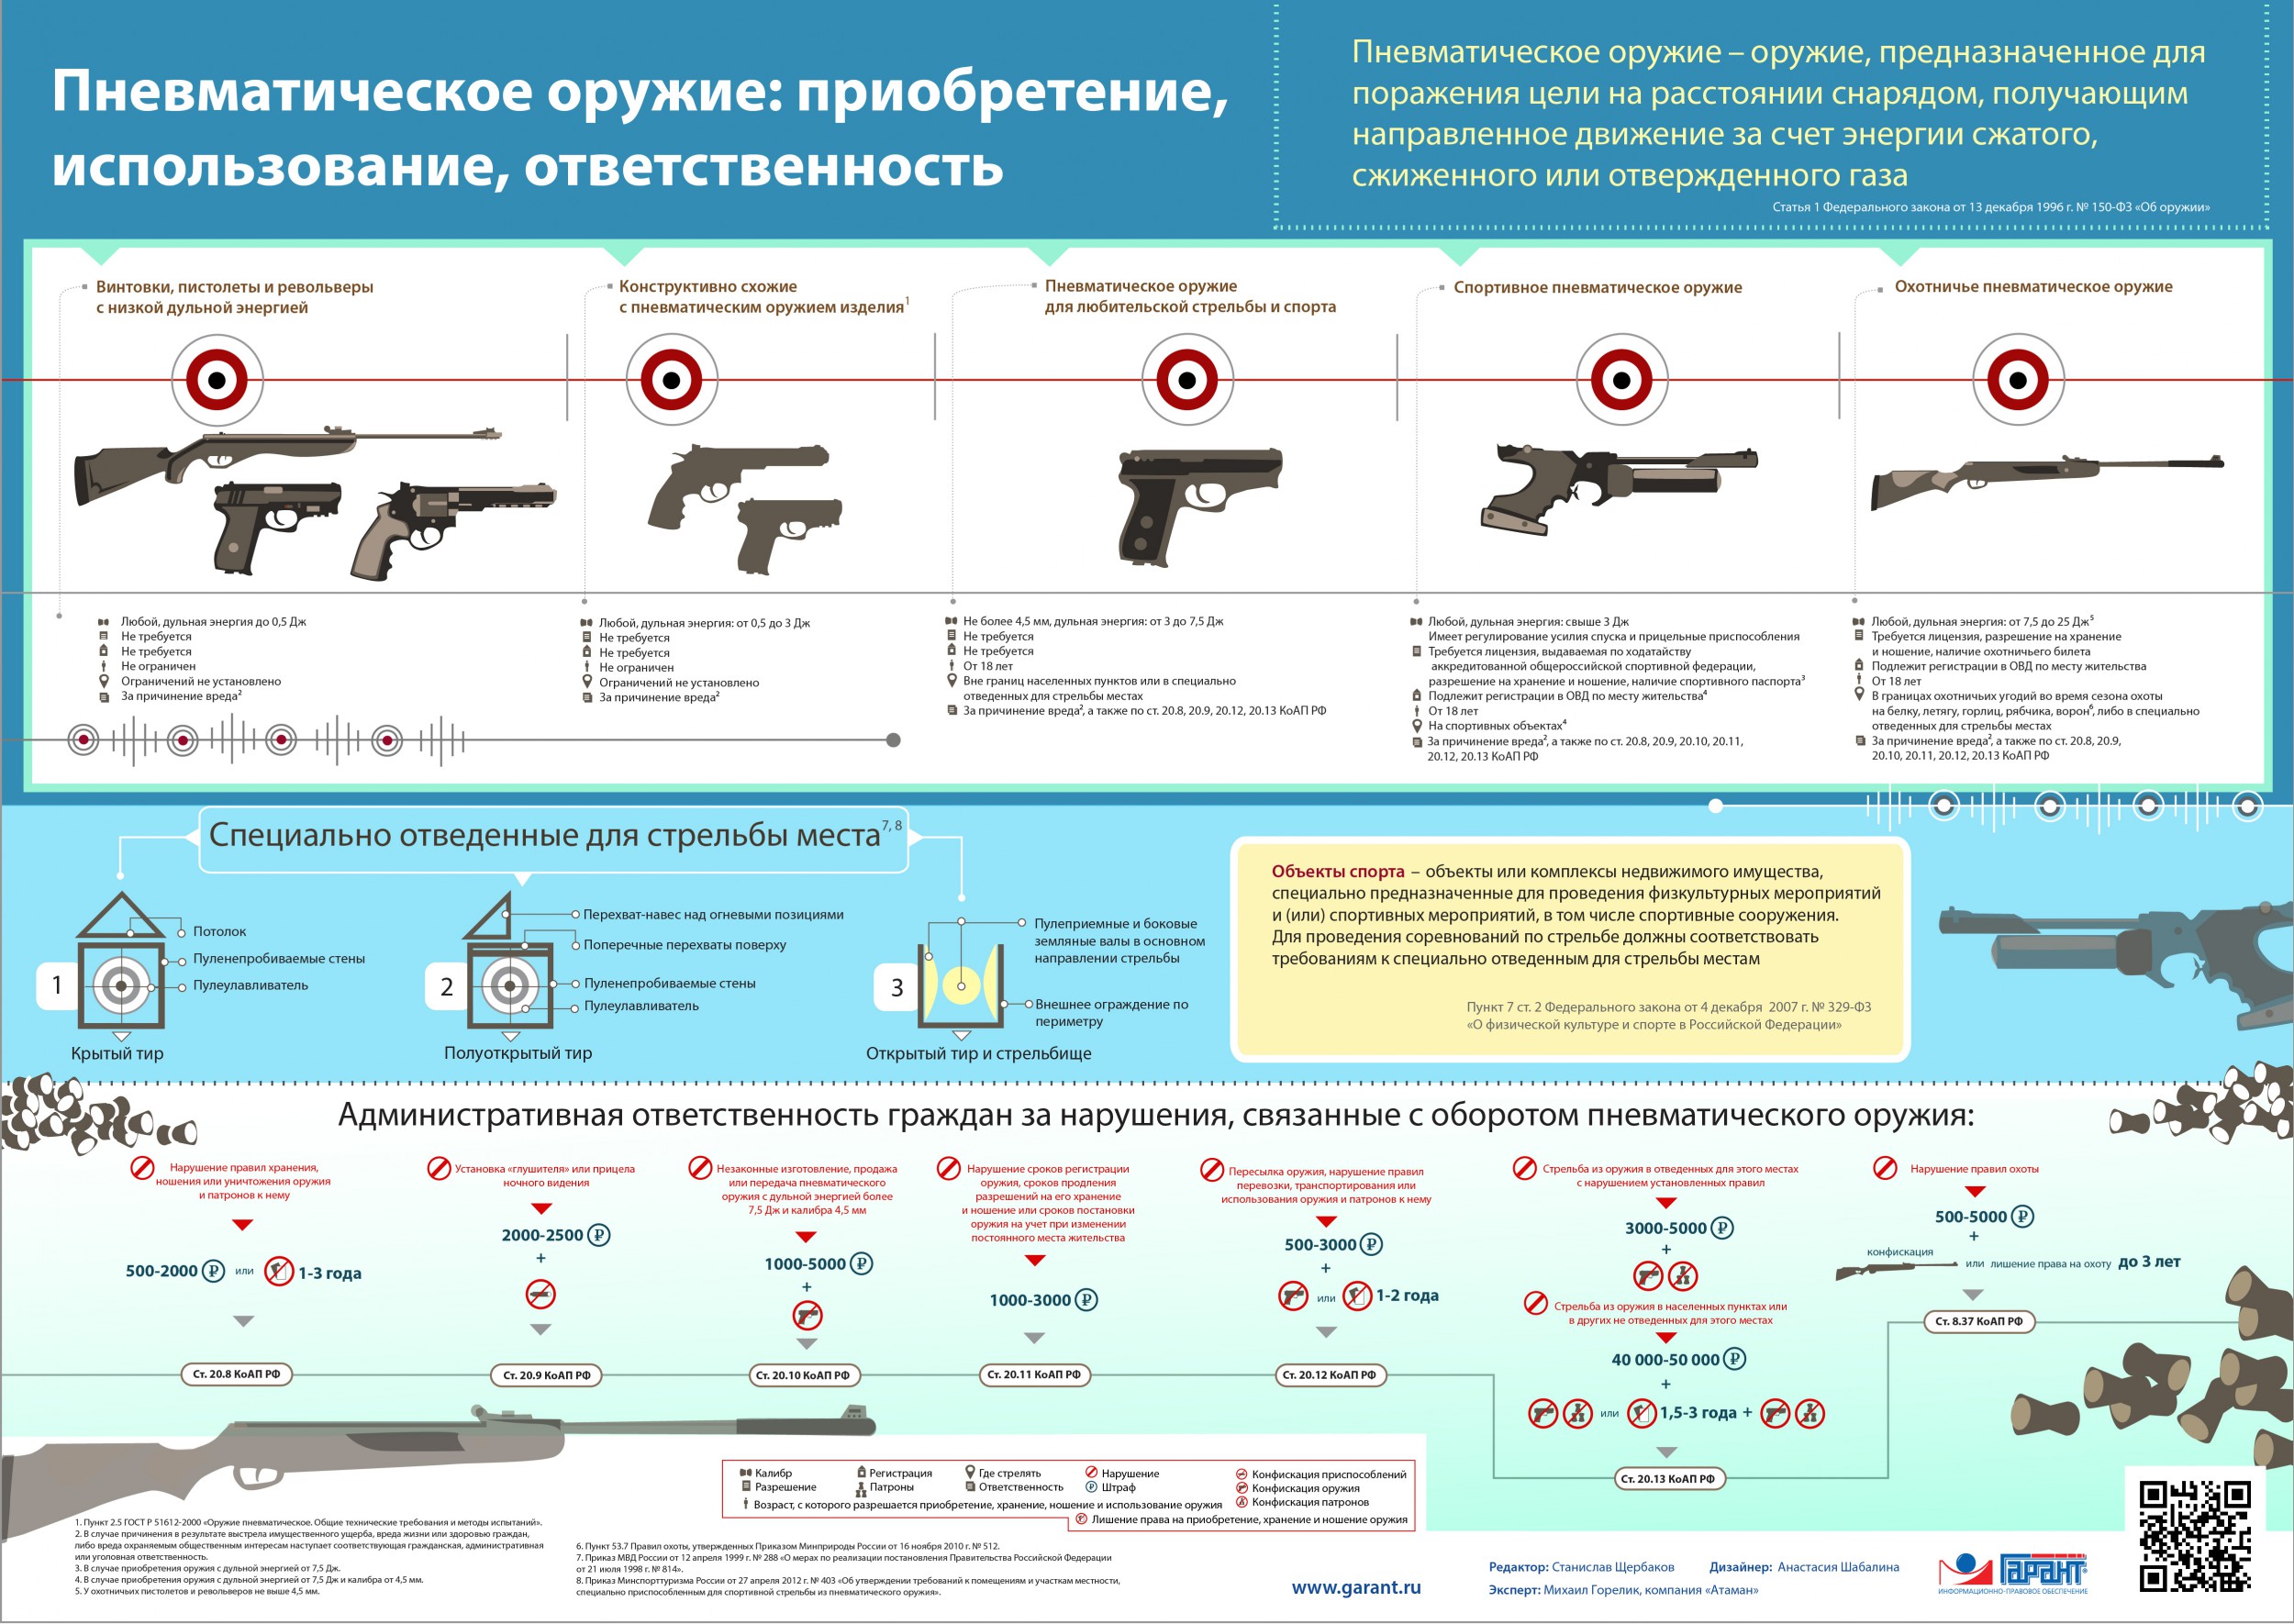 Инструкция о порядке приобретения оружия